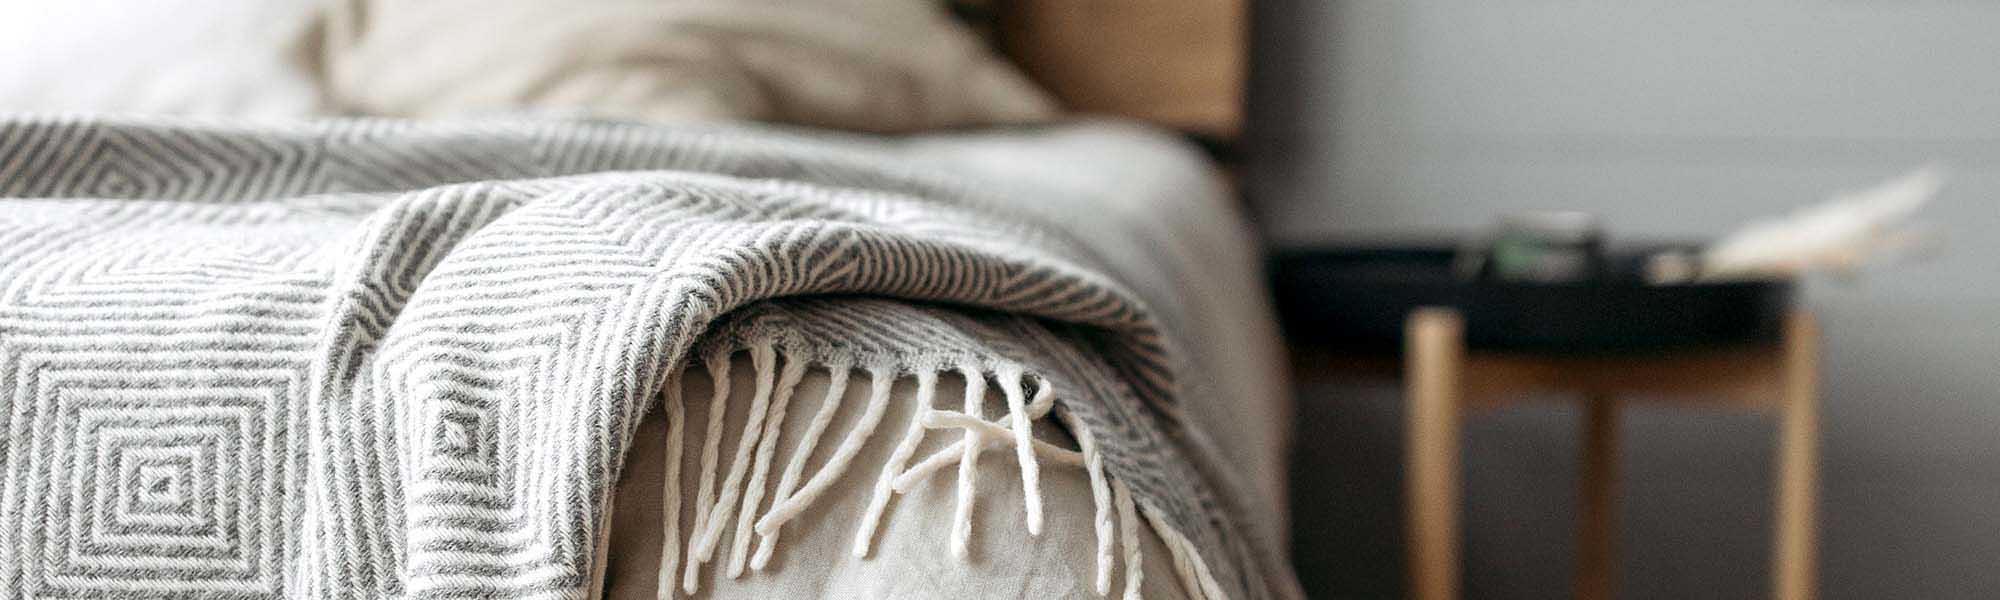 Light gray handmade blanket, woven from natural threads